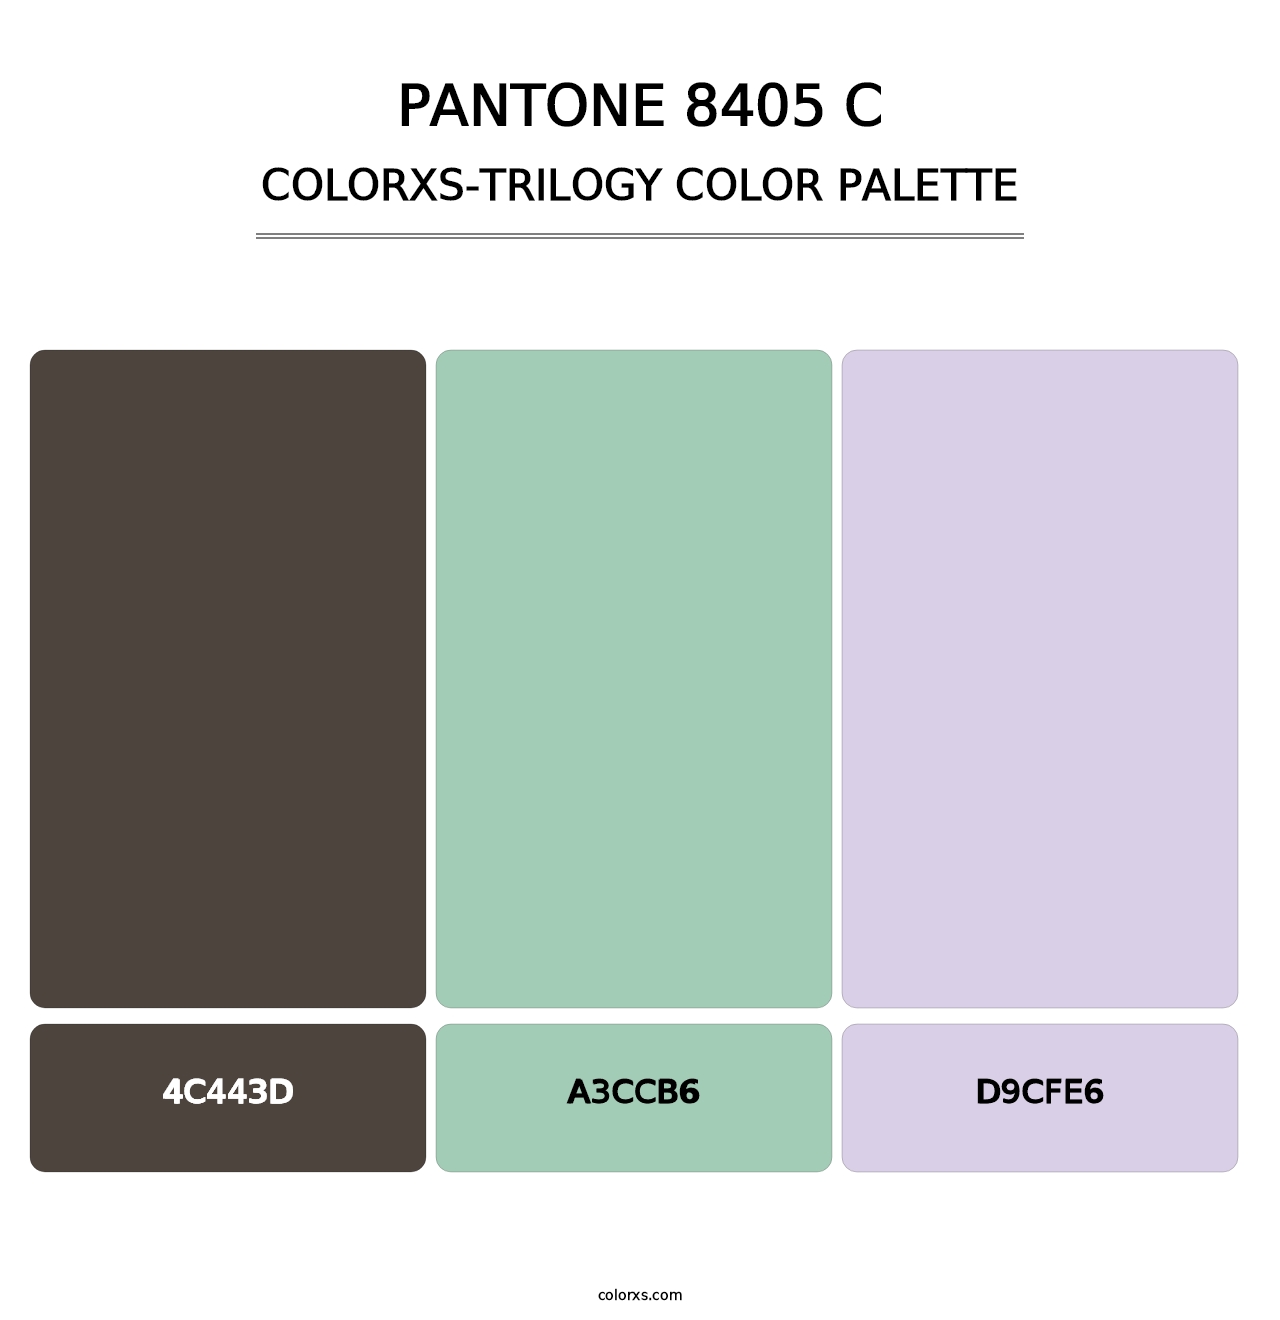 PANTONE 8405 C - Colorxs Trilogy Palette